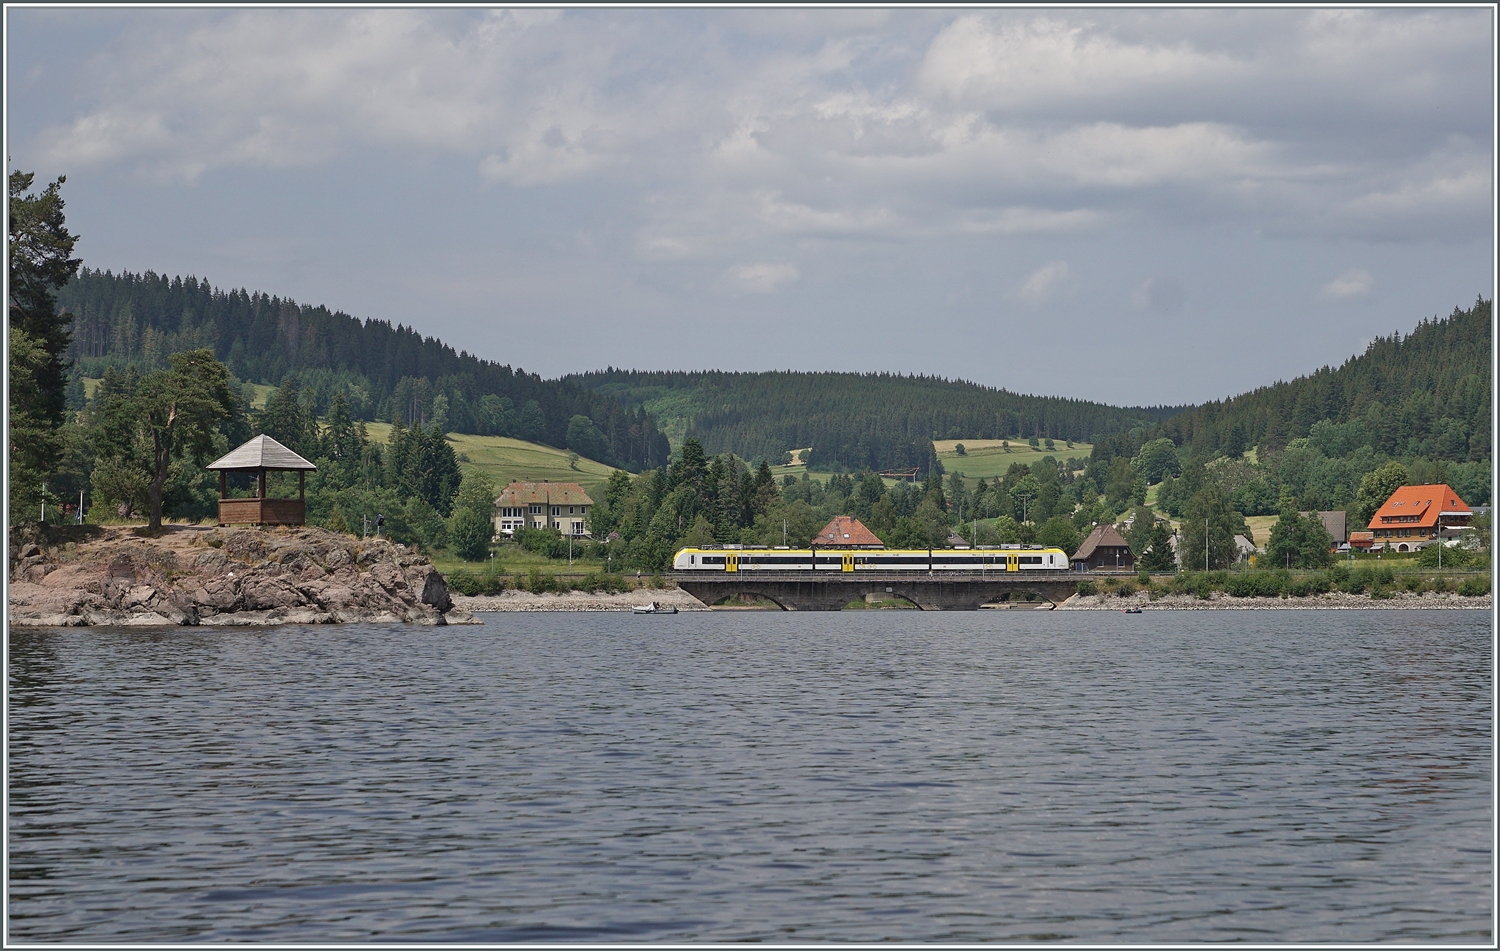 Ein dreiteiliger DB 1440  Coradia Continental 2  Grinsekatze  ist bei Schluchsee auf dem Weg nach Seebrugg. 
Die Fotostelle liegt, - nautische Kennnisse entbehrend - irgendwo mitten auf dem Schluchsee; wir waren mit einem  Pedalo  unterwegs.

20. Juni 2023